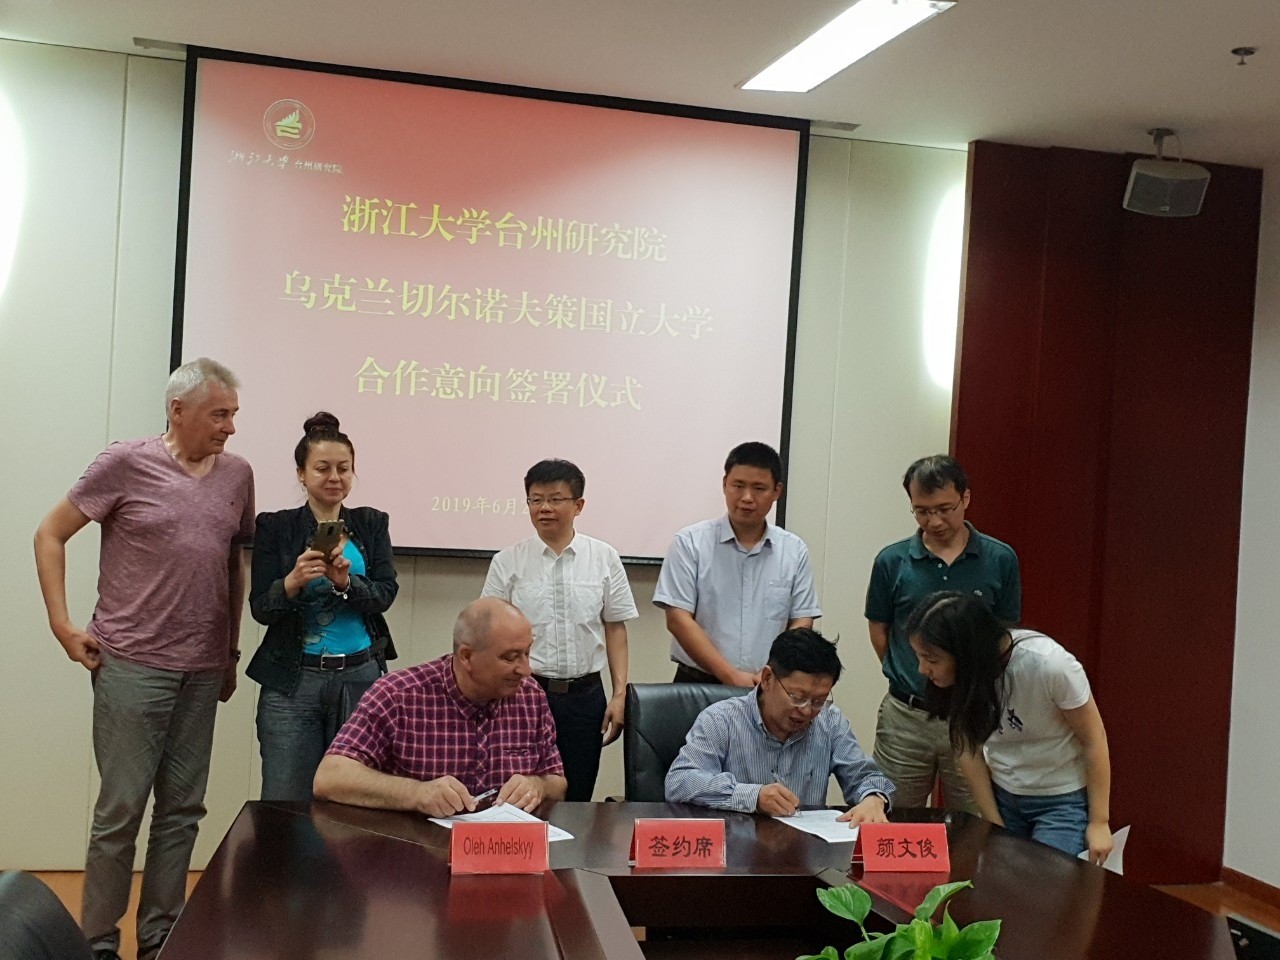 Китайський інститут Джейджанського університету, який входить у Топ 50 університетів світу, підписав персанальну угоду про співпрацю з чернівецьким професором Ангельським